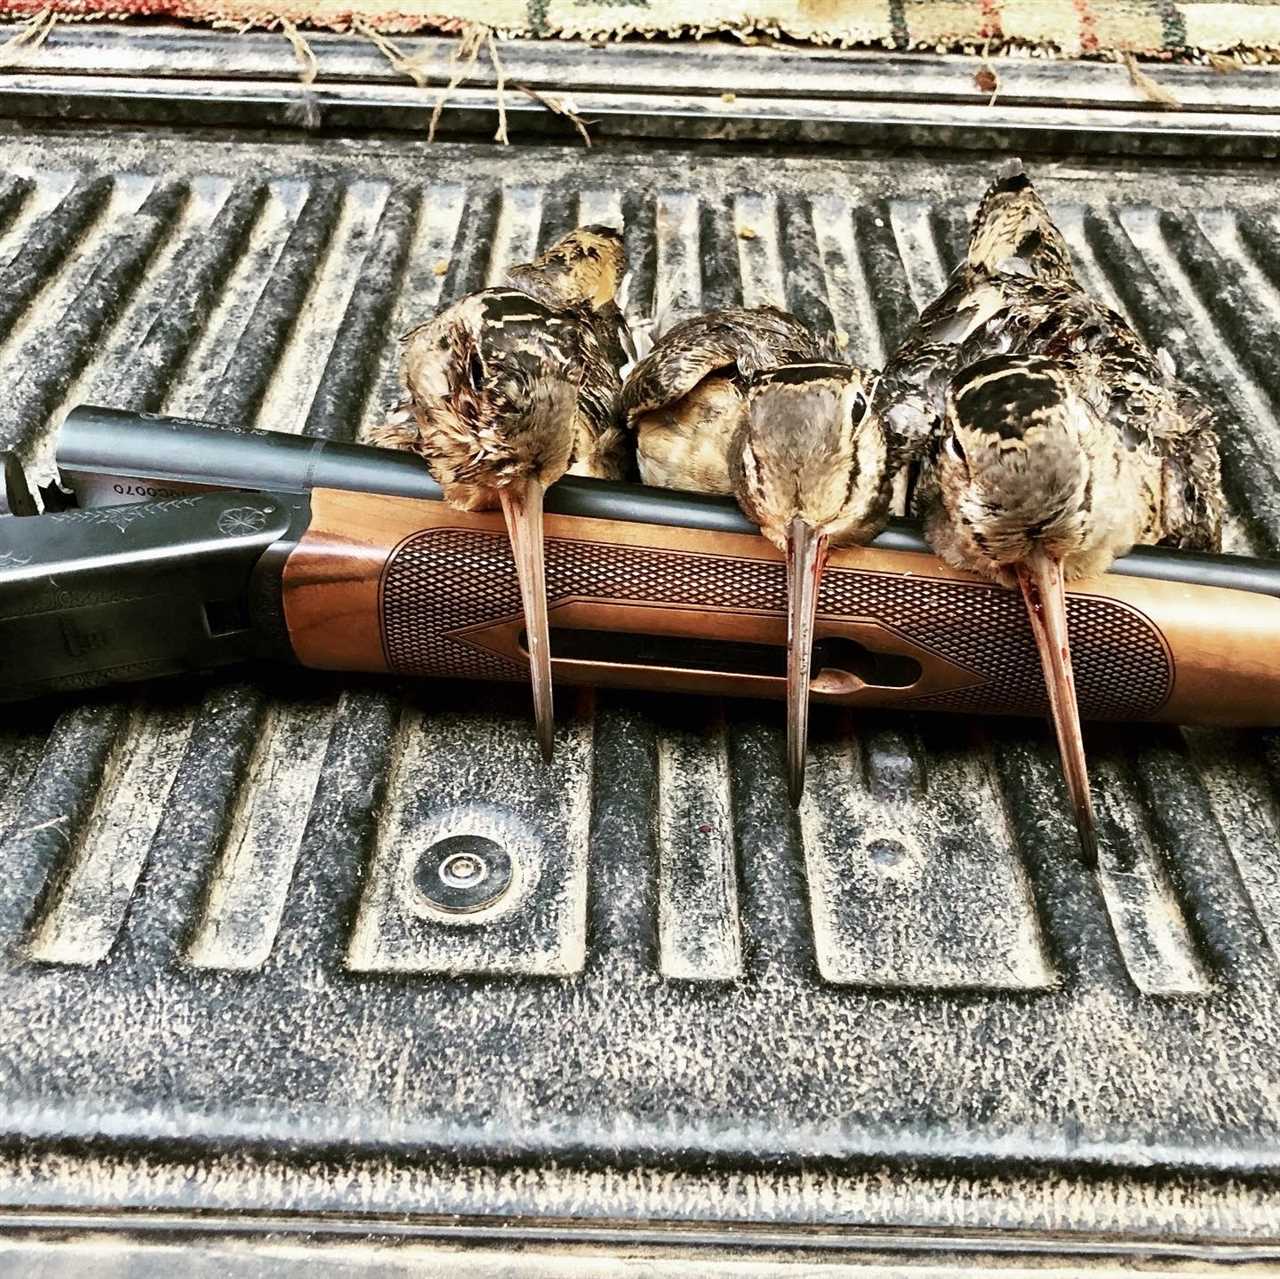 Shotgun selection for woodcock hunting